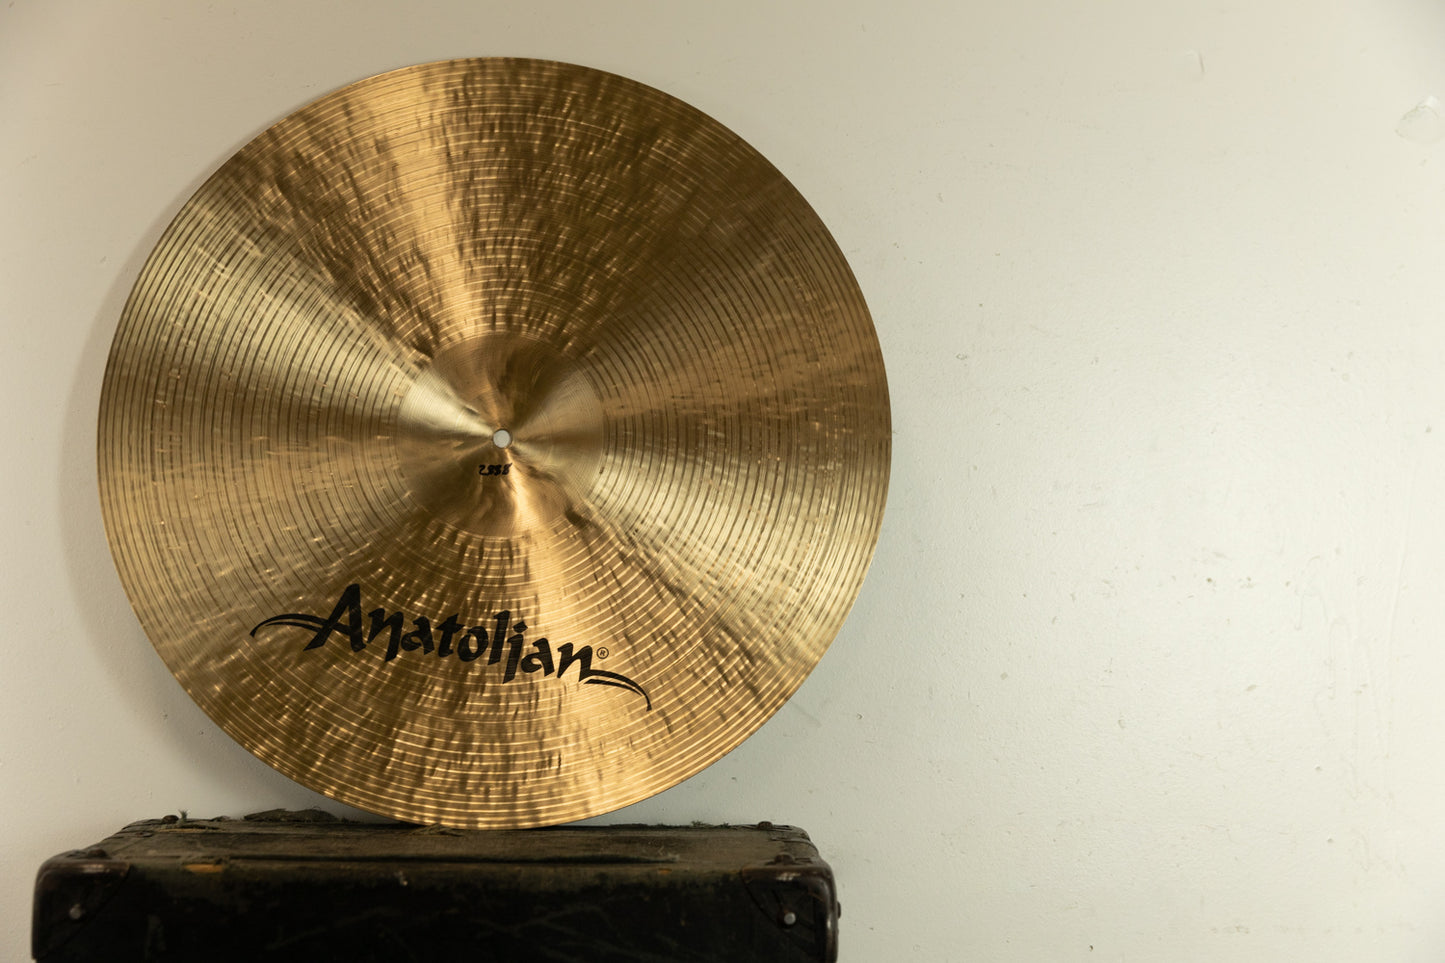 Anatolian 22" Kappadokia Thin Ride Cymbal 2888g